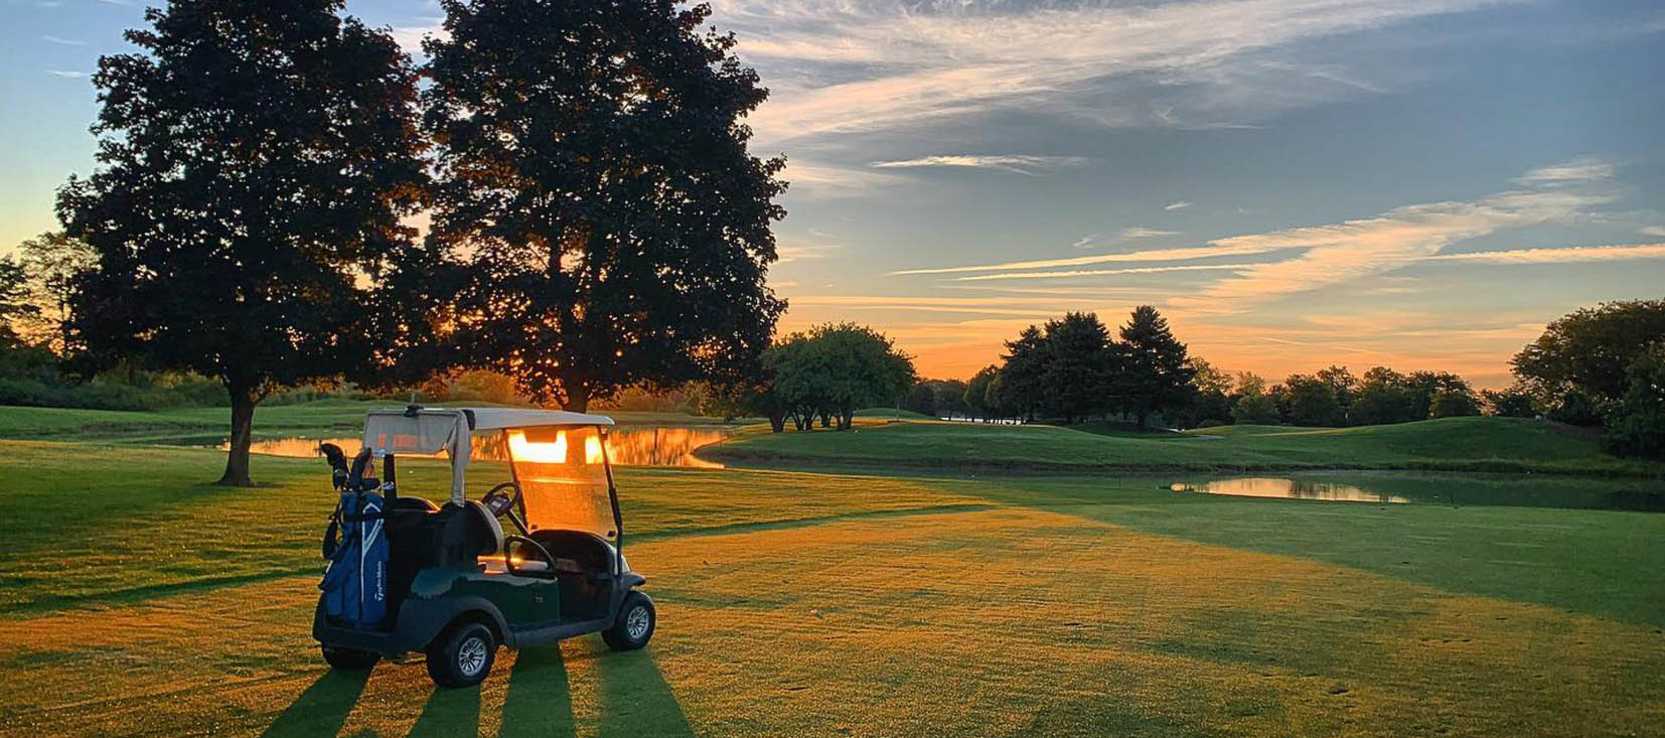 Golf Cart at sunset